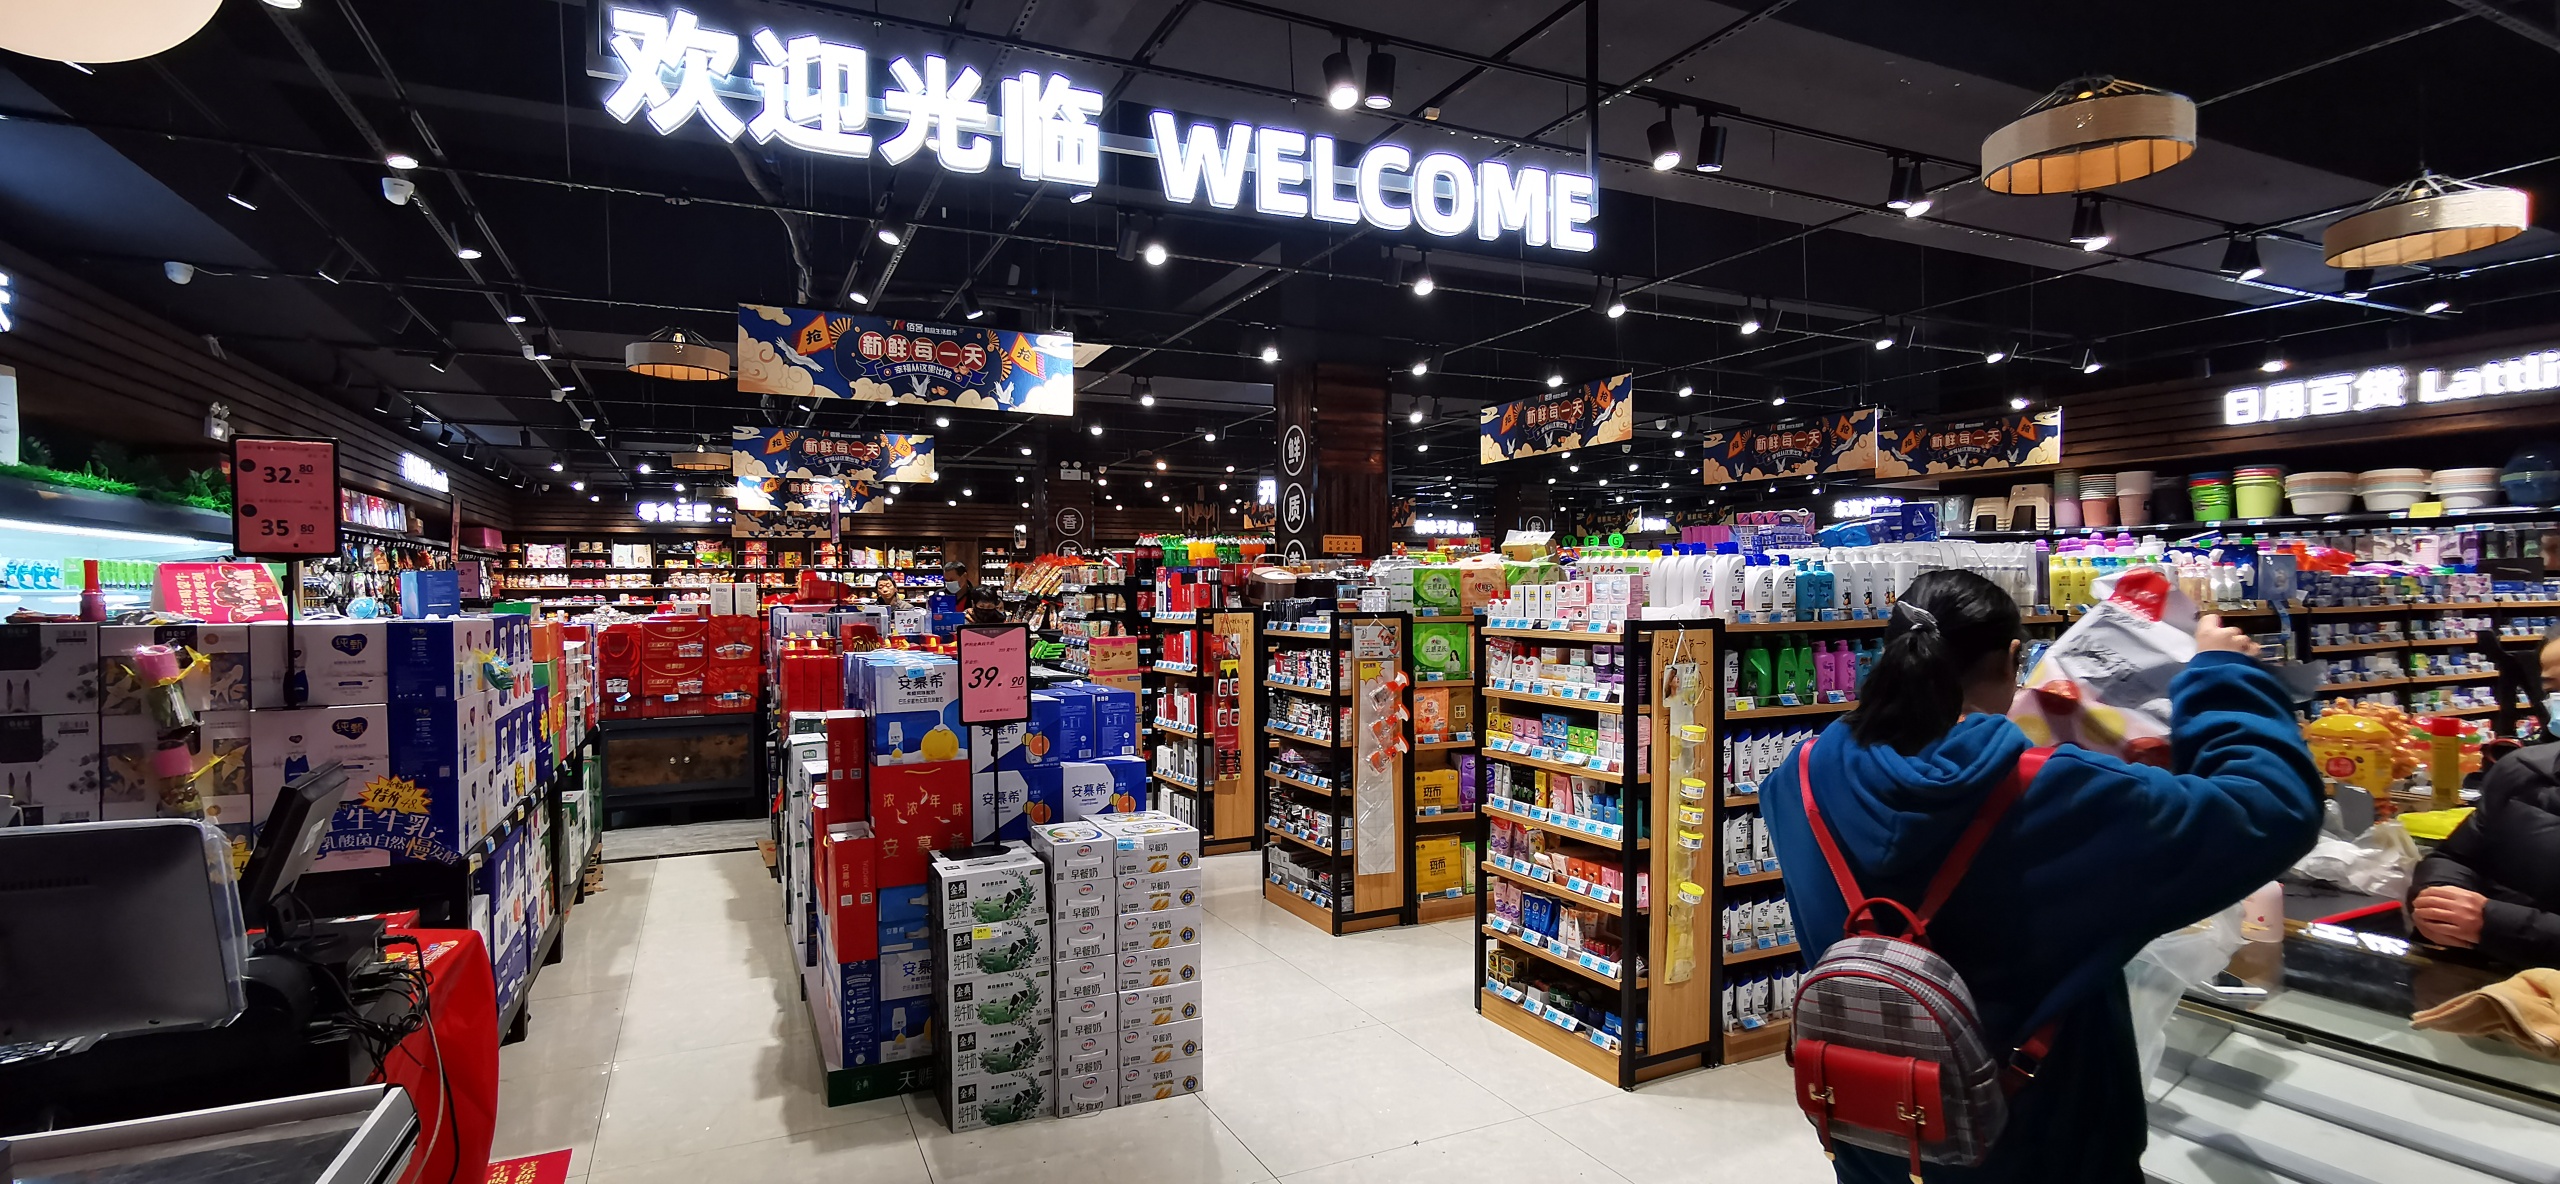 佰客精品生活超市丝绸新区店盛大开业目前市区已拥有五家门店